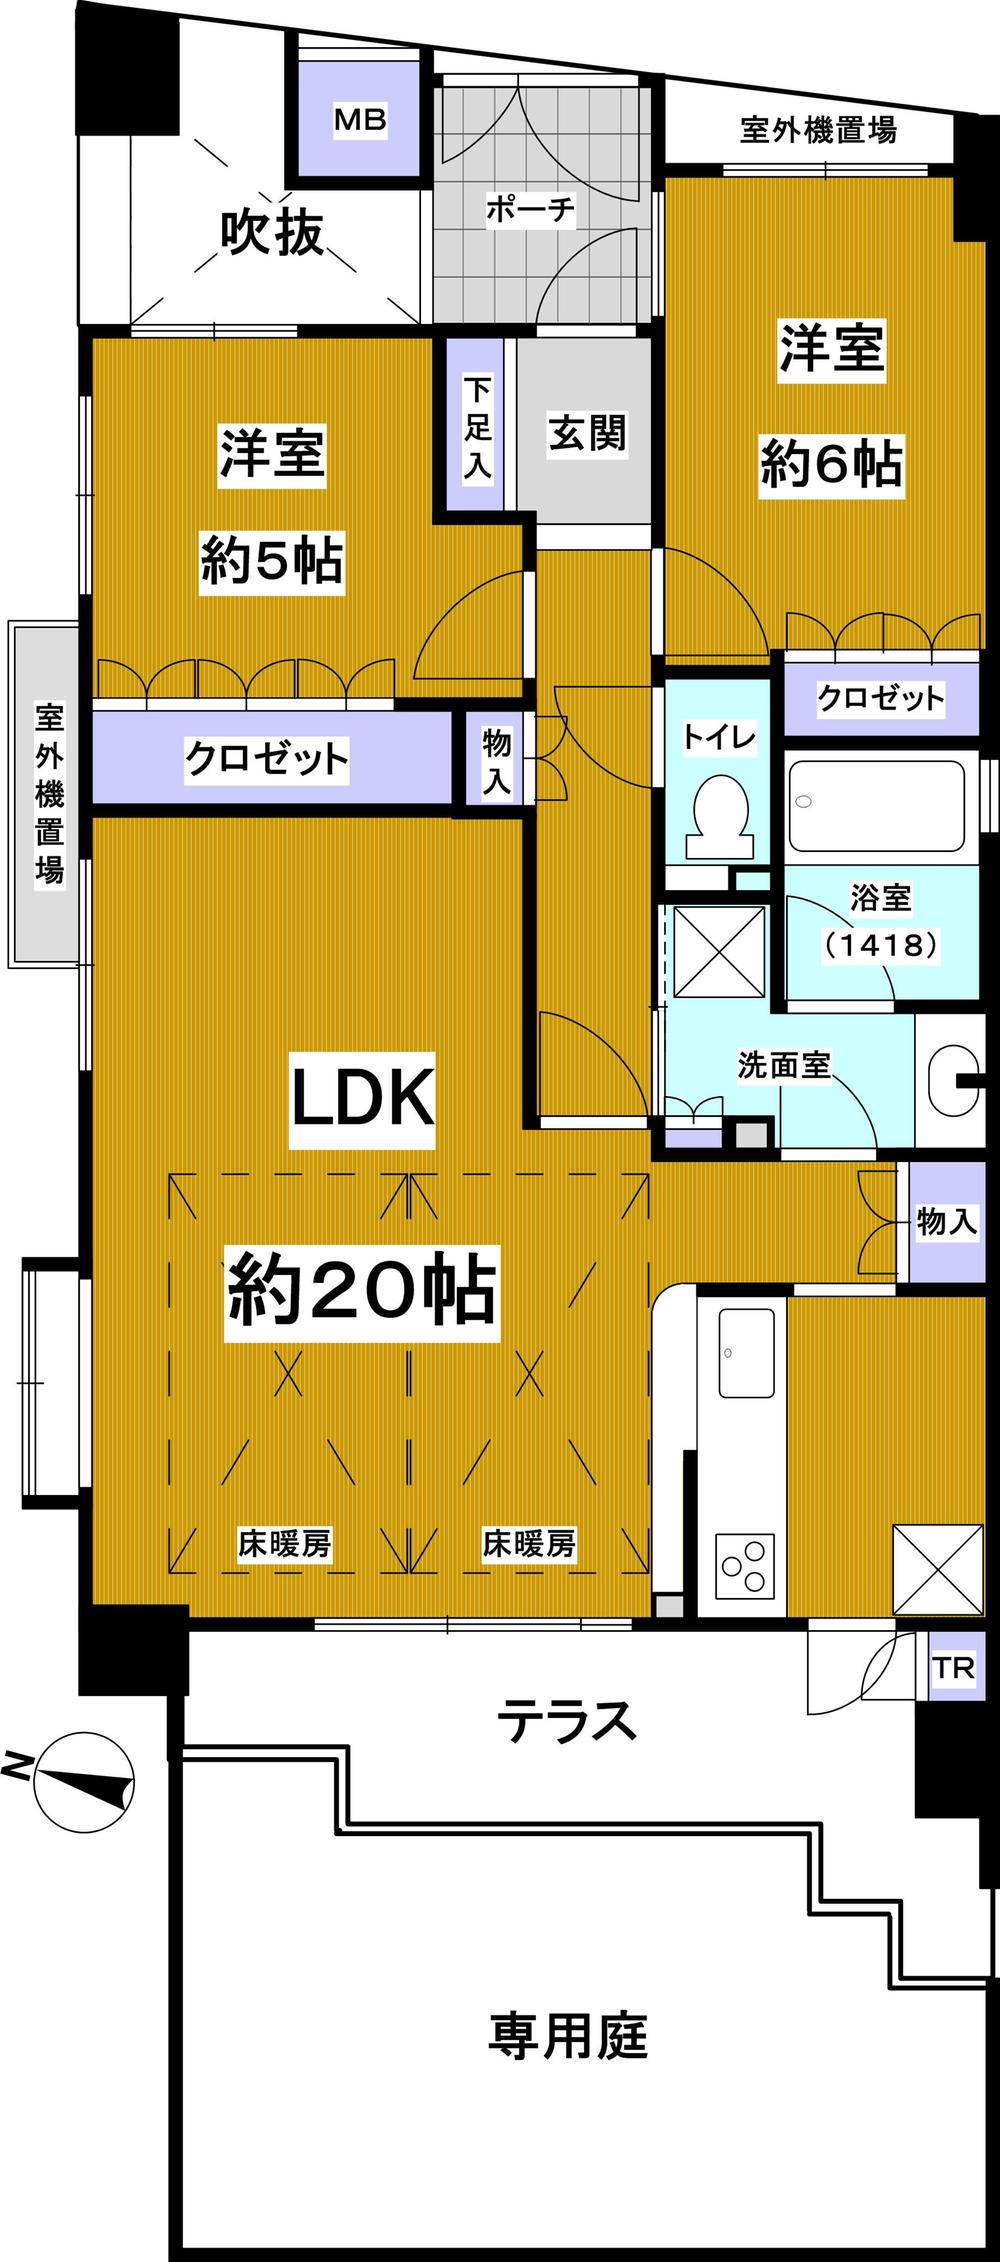 Floor plan. 2LDK, Price 38,800,000 yen, Occupied area 70.44 sq m